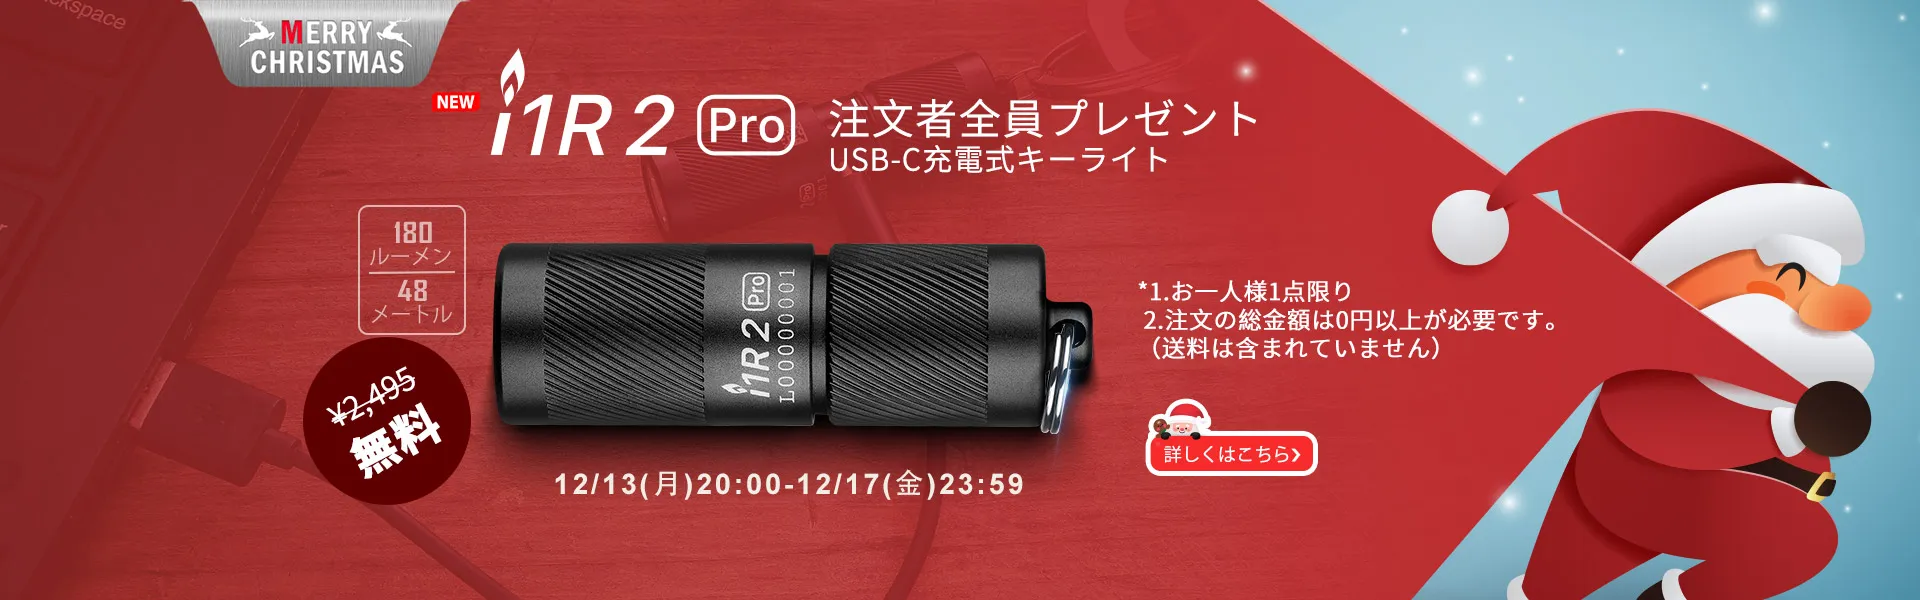 購入者全員にプレゼントされるオーライト i1R 2 Pro ブラック